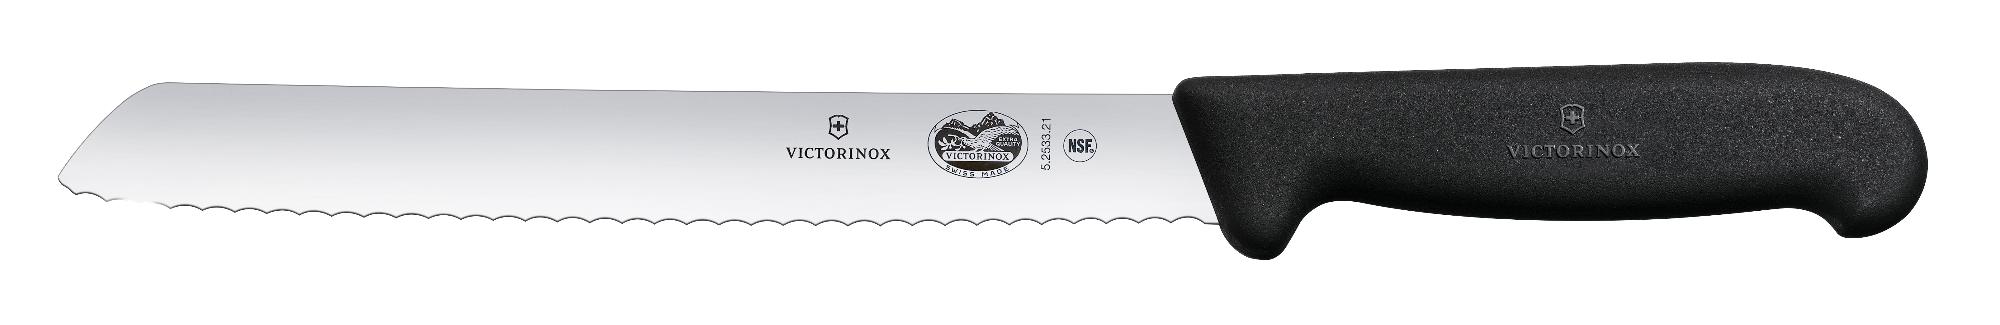 Fibrox bread knife, serrated - black